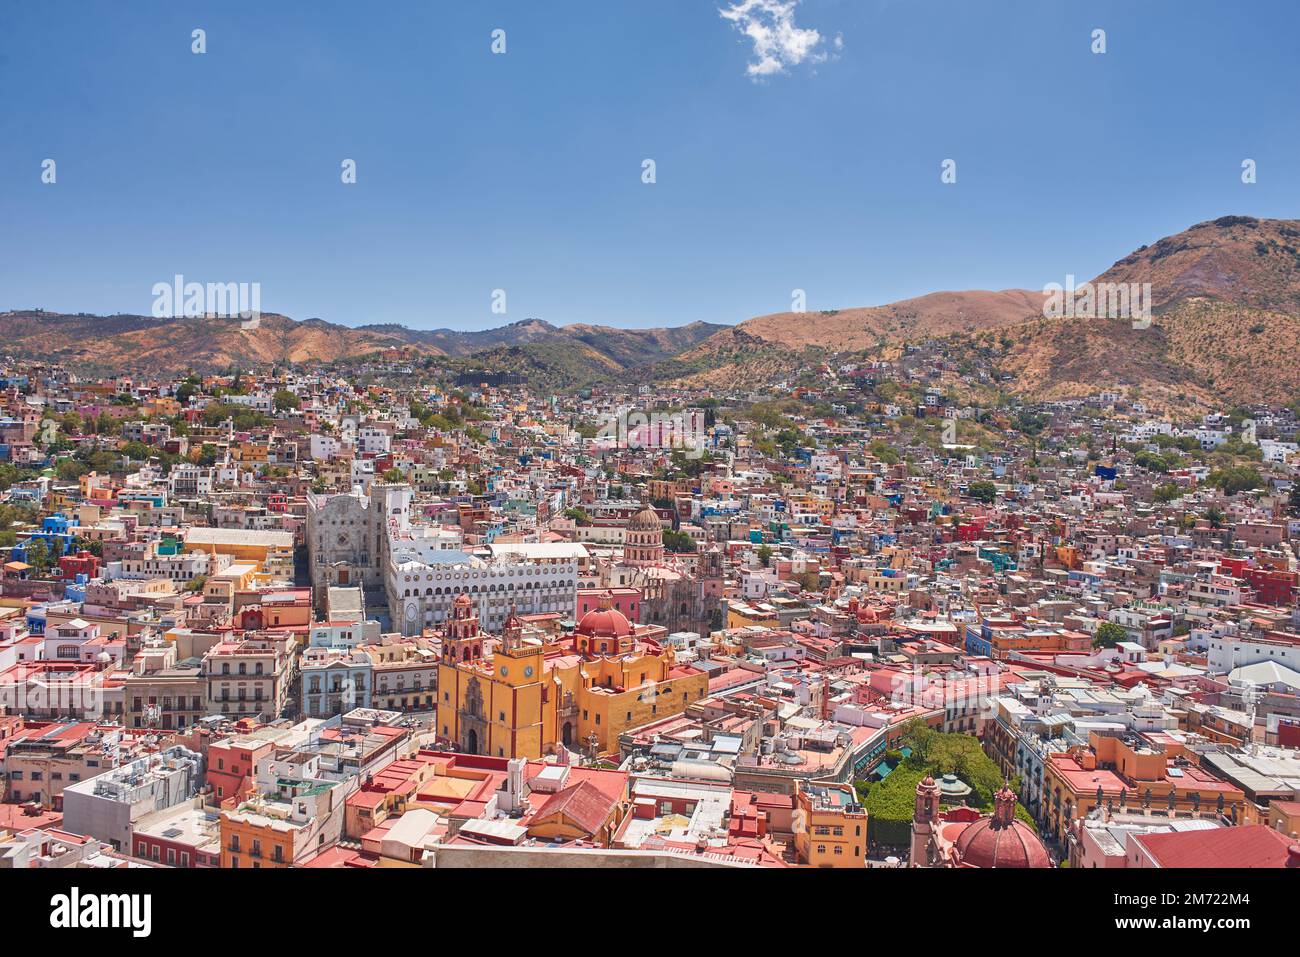 Photographie aérienne de la ville de Guanajuato pendant la journée avec un ciel clair, pas de personnes Banque D'Images